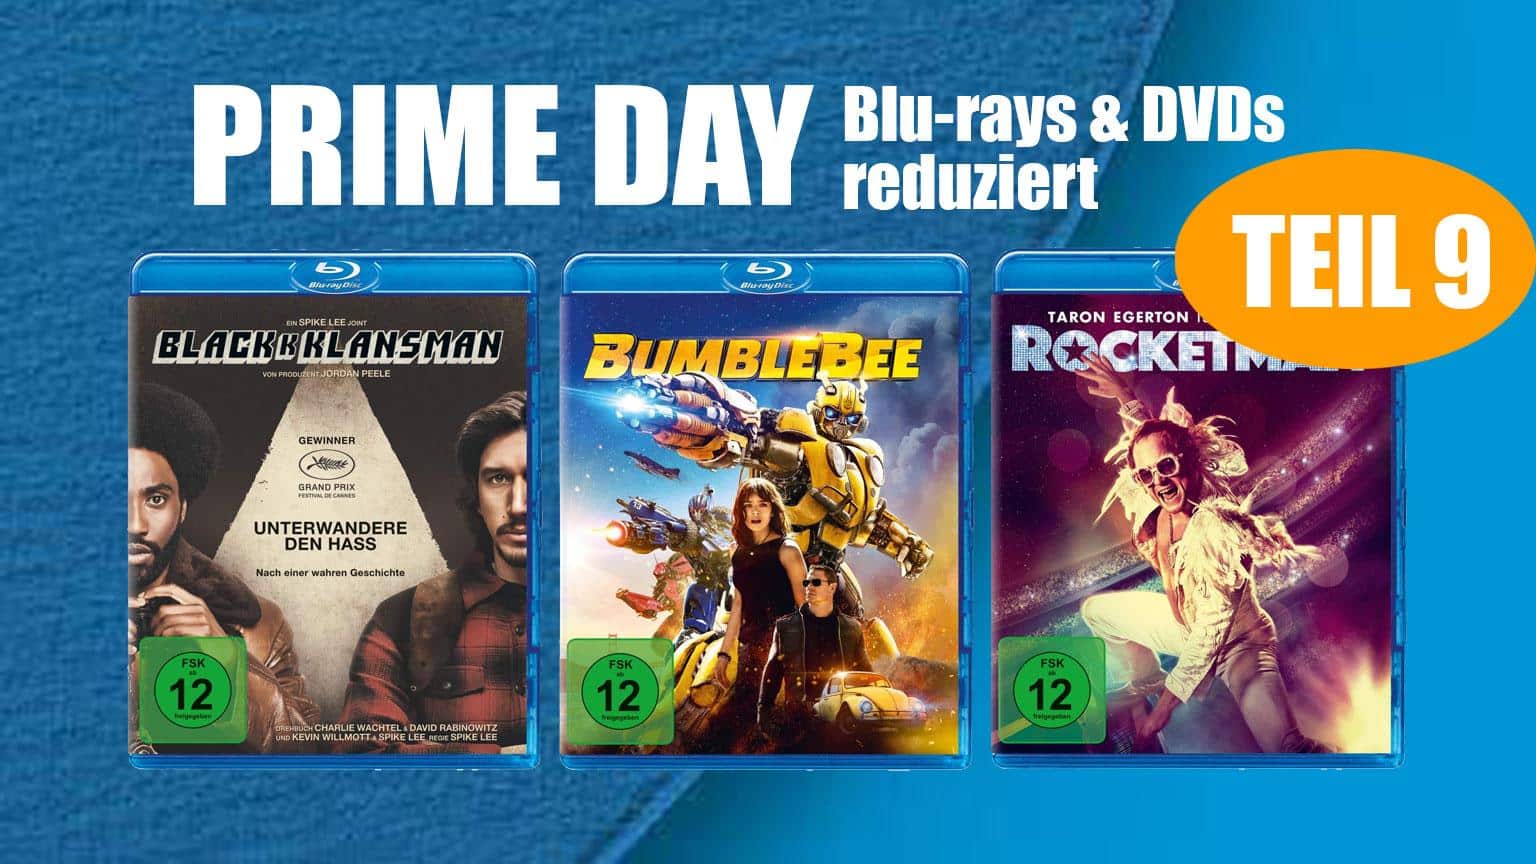 Prime Day 2020 Blu-ray & DVD reduziert Deal Amazon.de sparen kaufen shop Artikelbild Teil 9